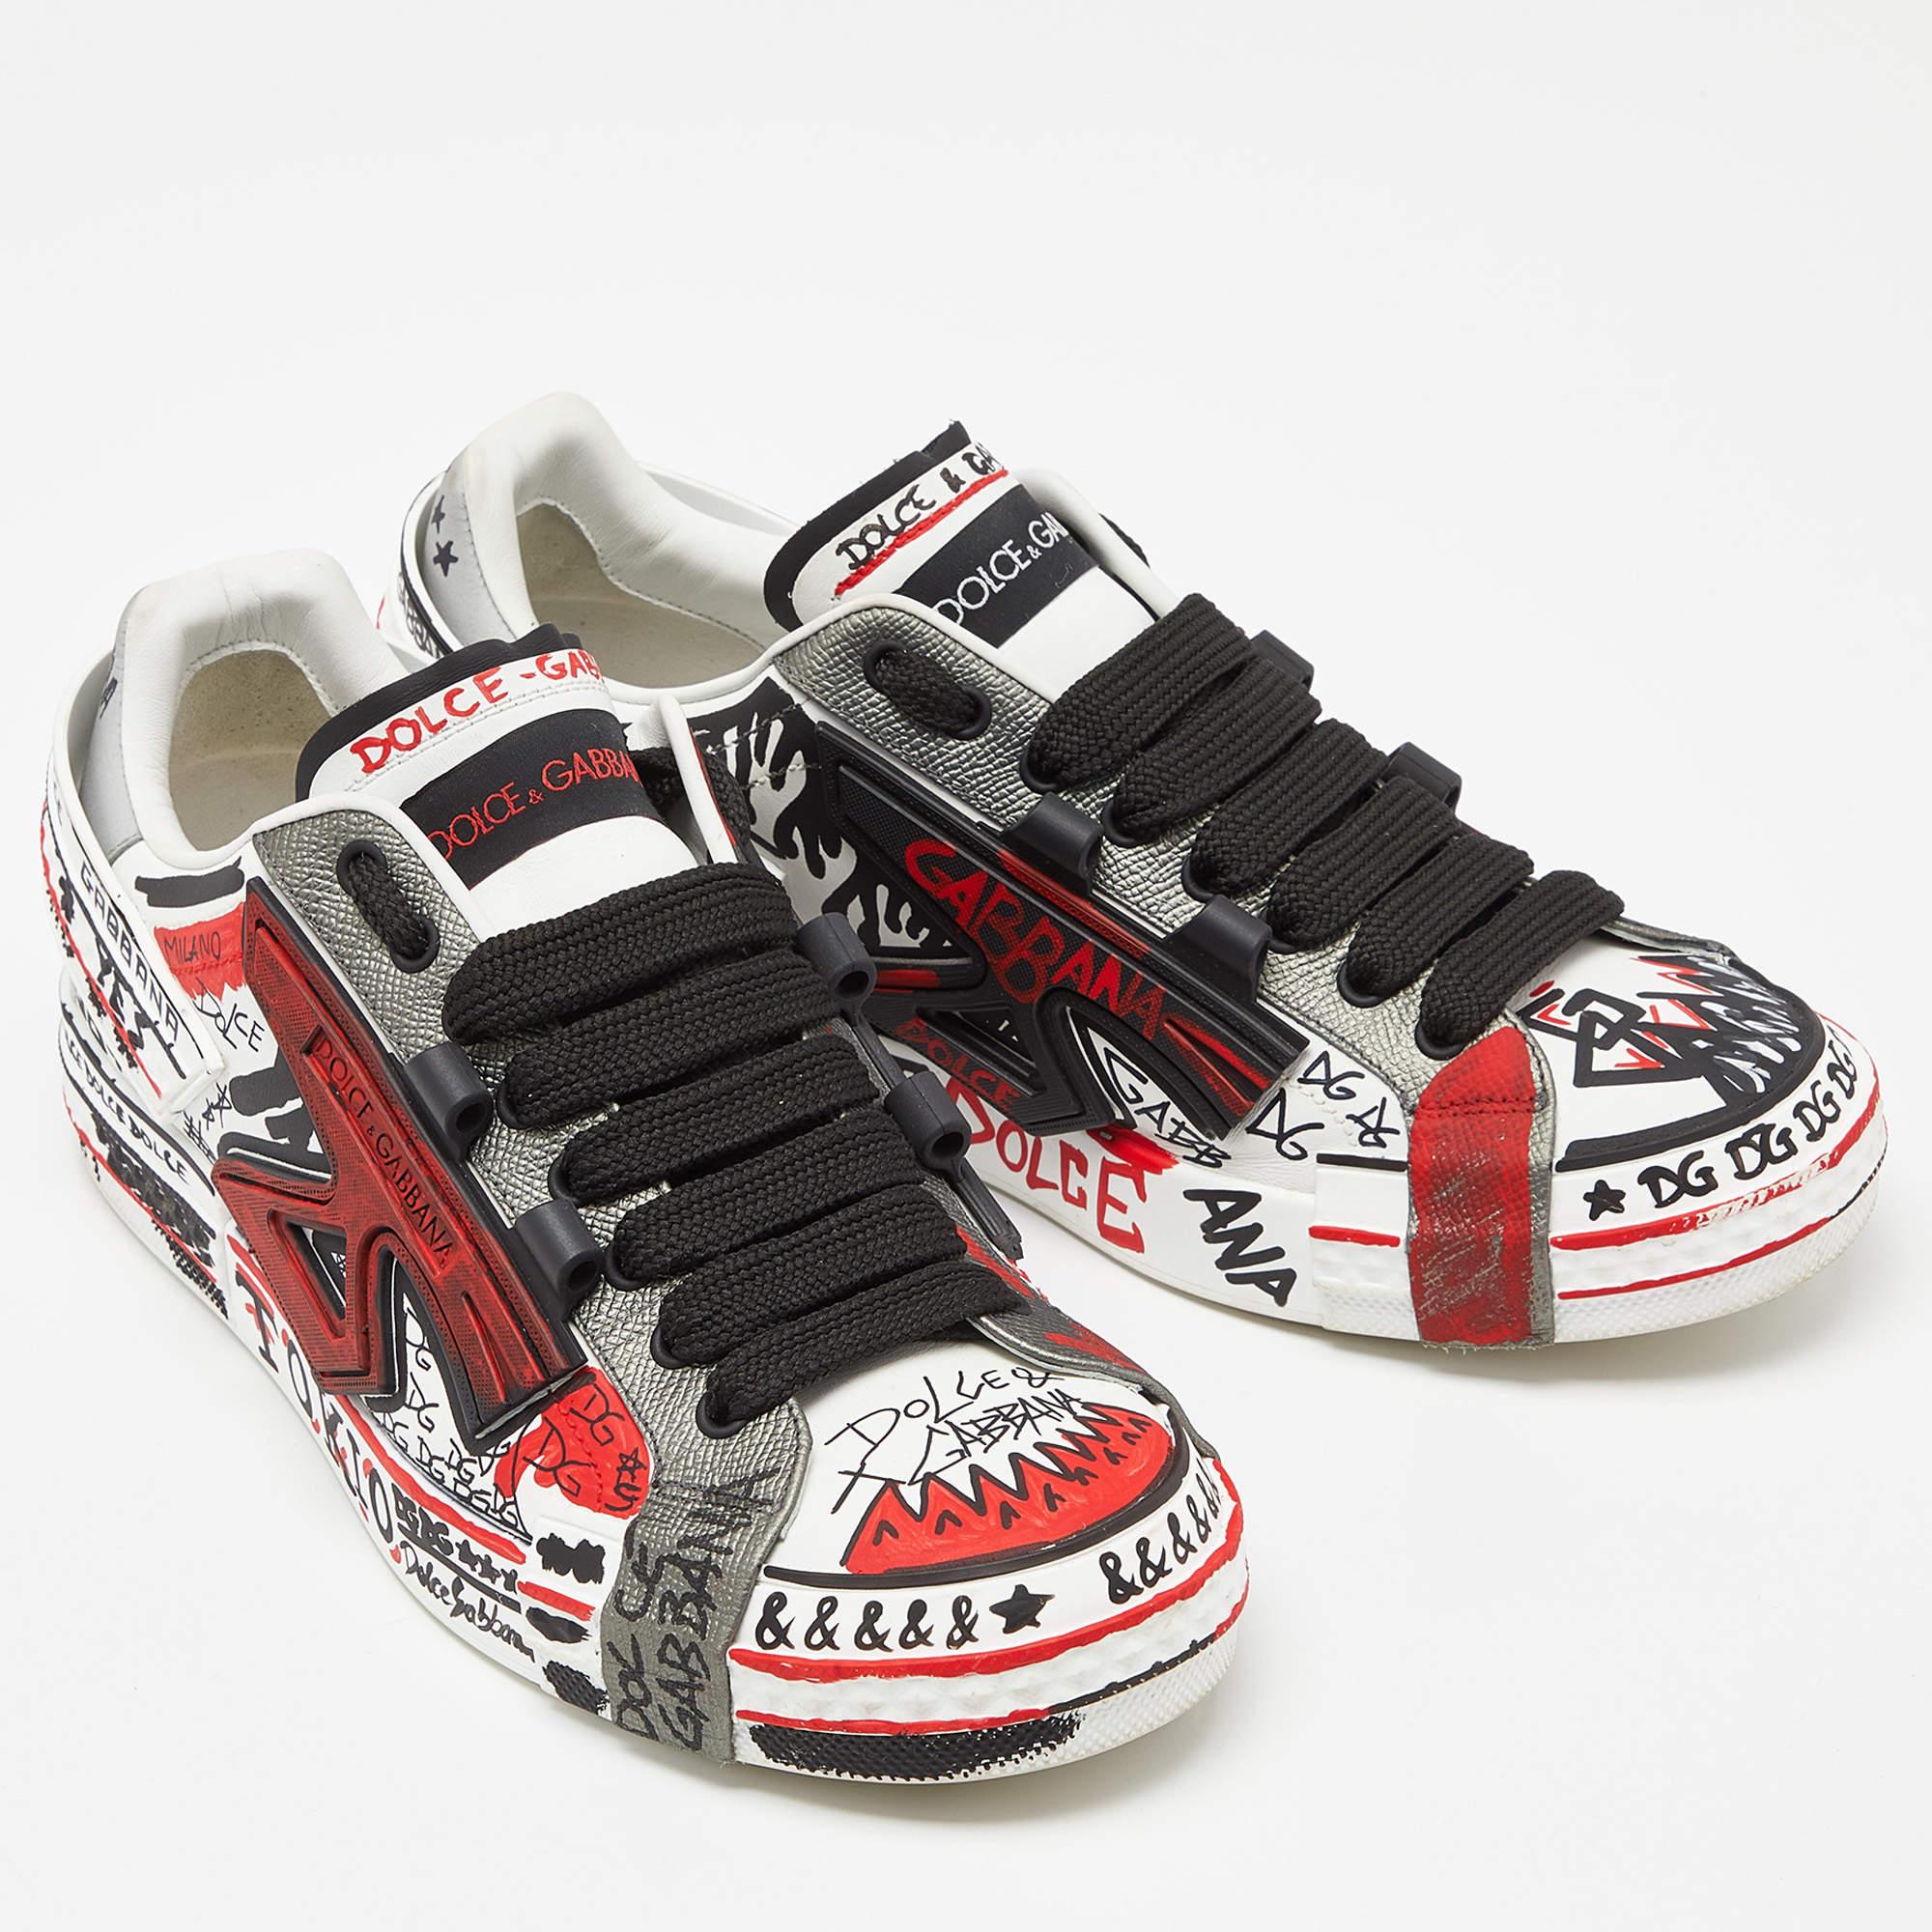 Dolce & Gabbana Tricolor Leather Graffiti Print Portofino Sneakers Size 43 1